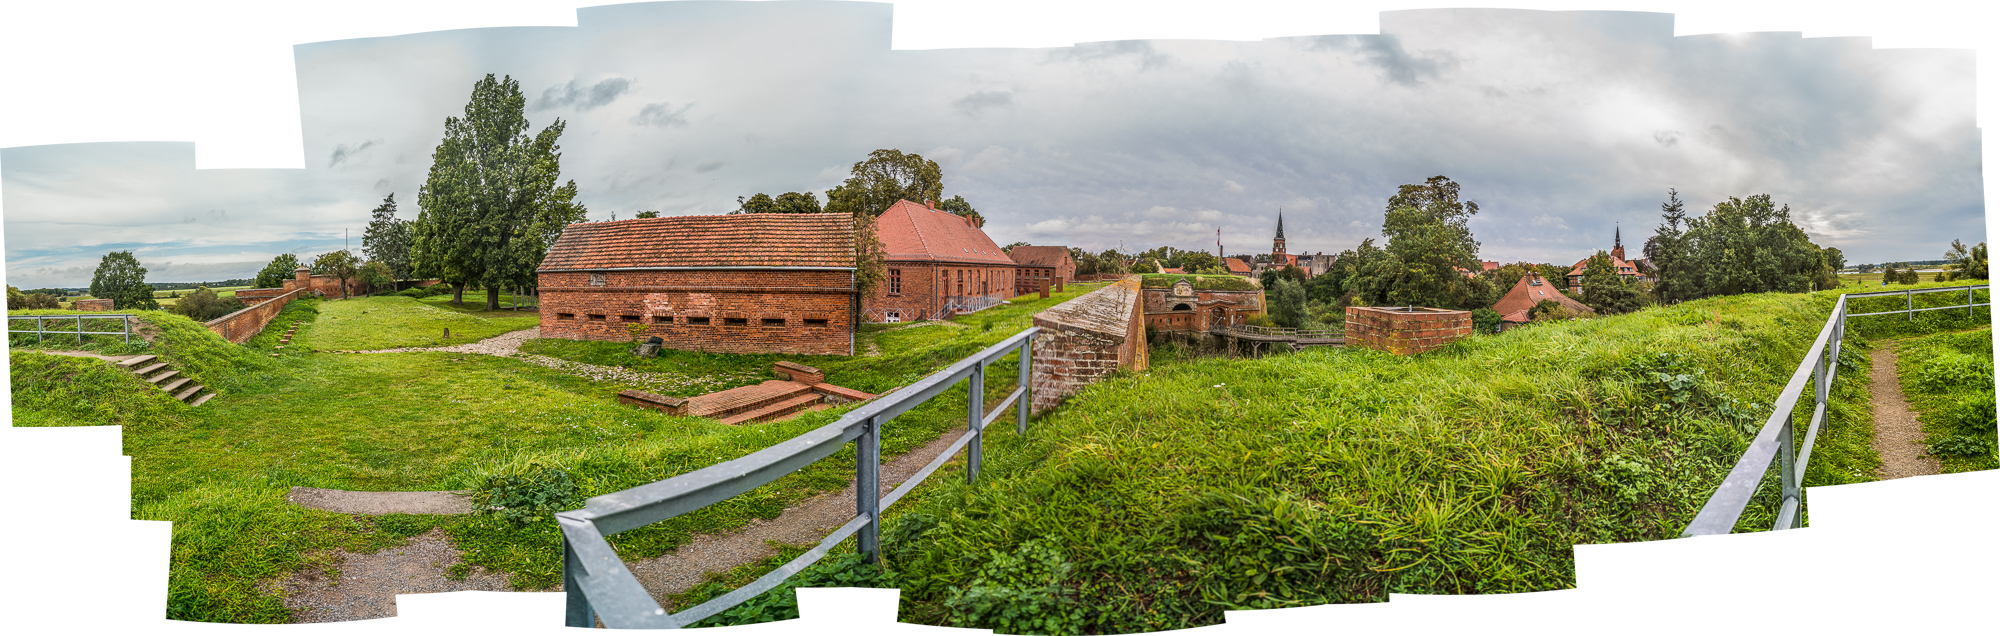 ZusammenGestückeltes Panorama einer FestungsAnlage mit gras-bewachsenen Wällen, BacksteinGebäude, im Hintergrund eine alte Stadt mit mehreren spitzen KirchTürmen